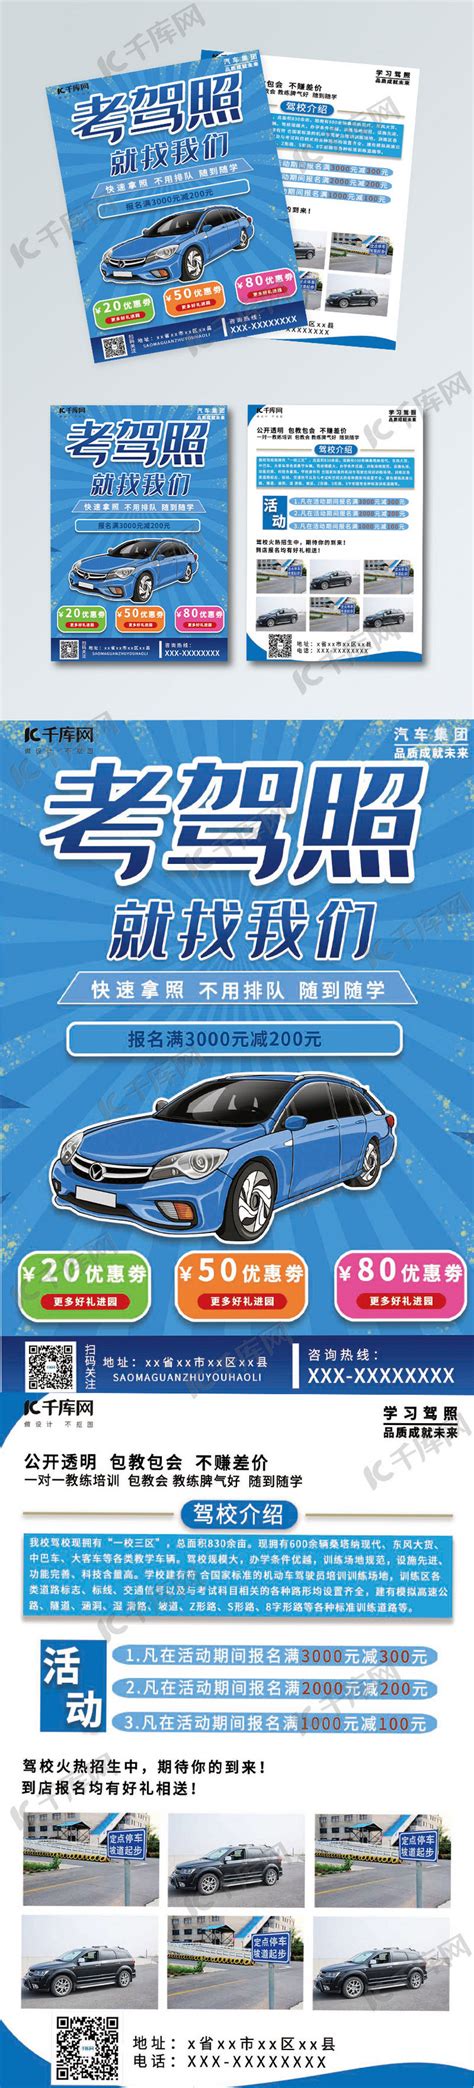 驾校广告图片_驾校广告设计素材_红动中国